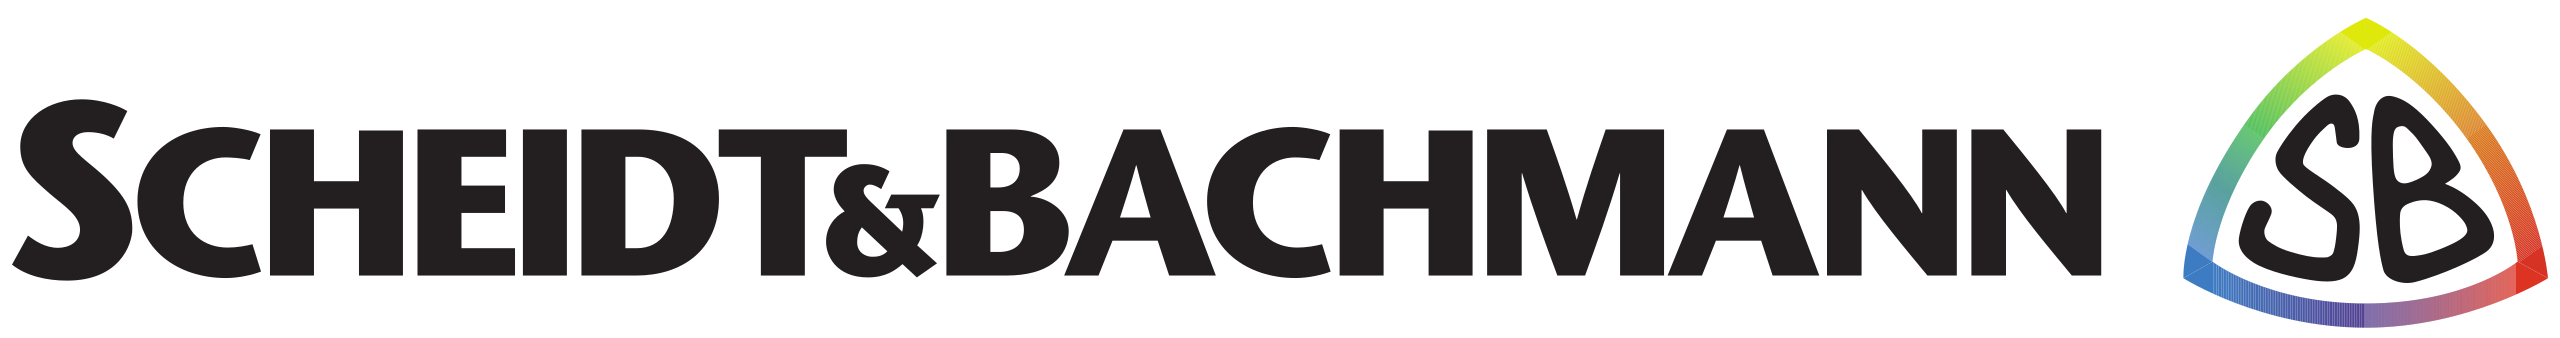 Scheidt & Bachmann GmbH logo